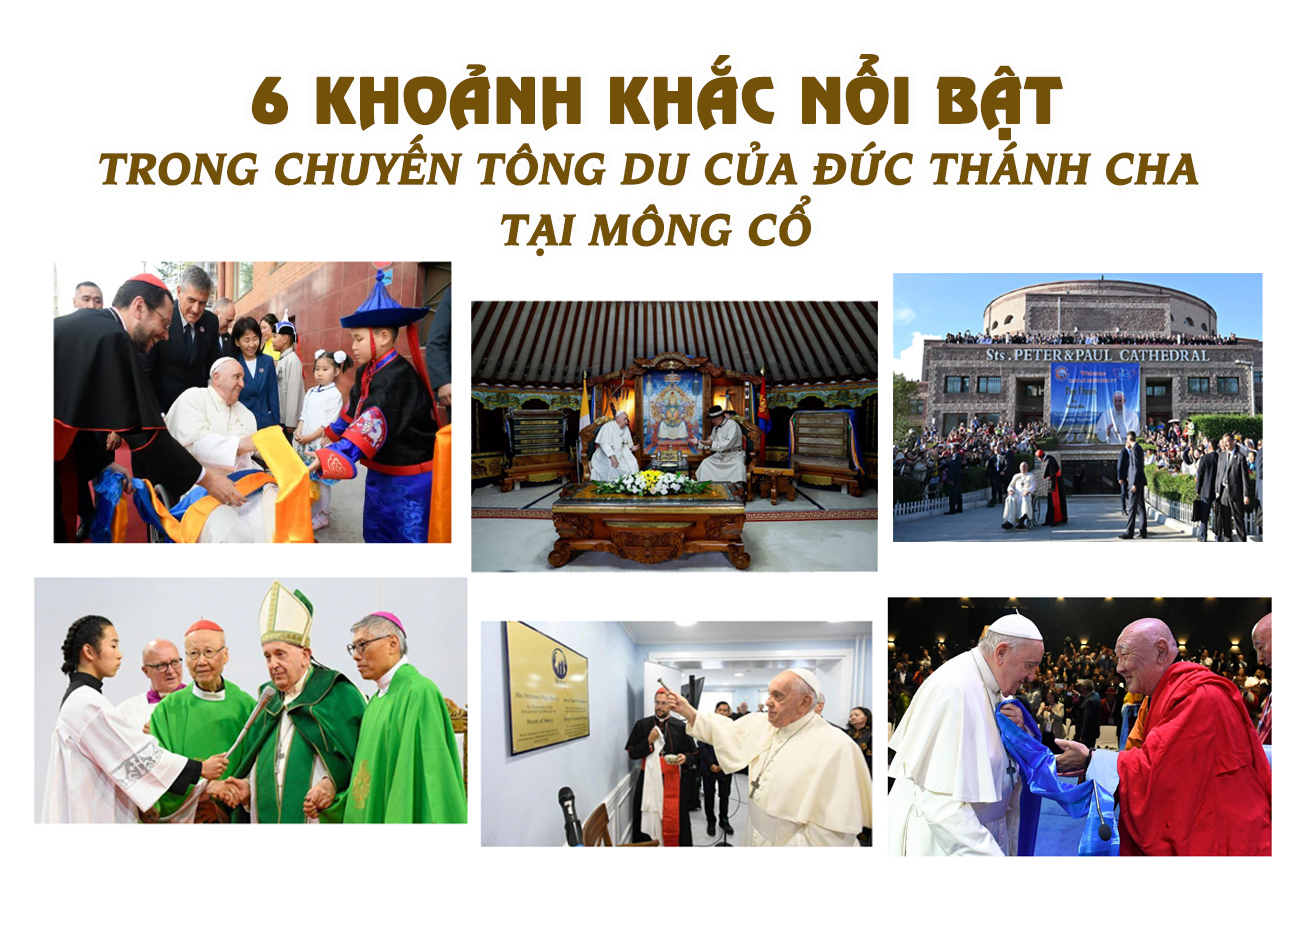 6 khoảnh khắc nổi bật trong chuyến tông du của Đức Thánh Cha tại Mông Cổ